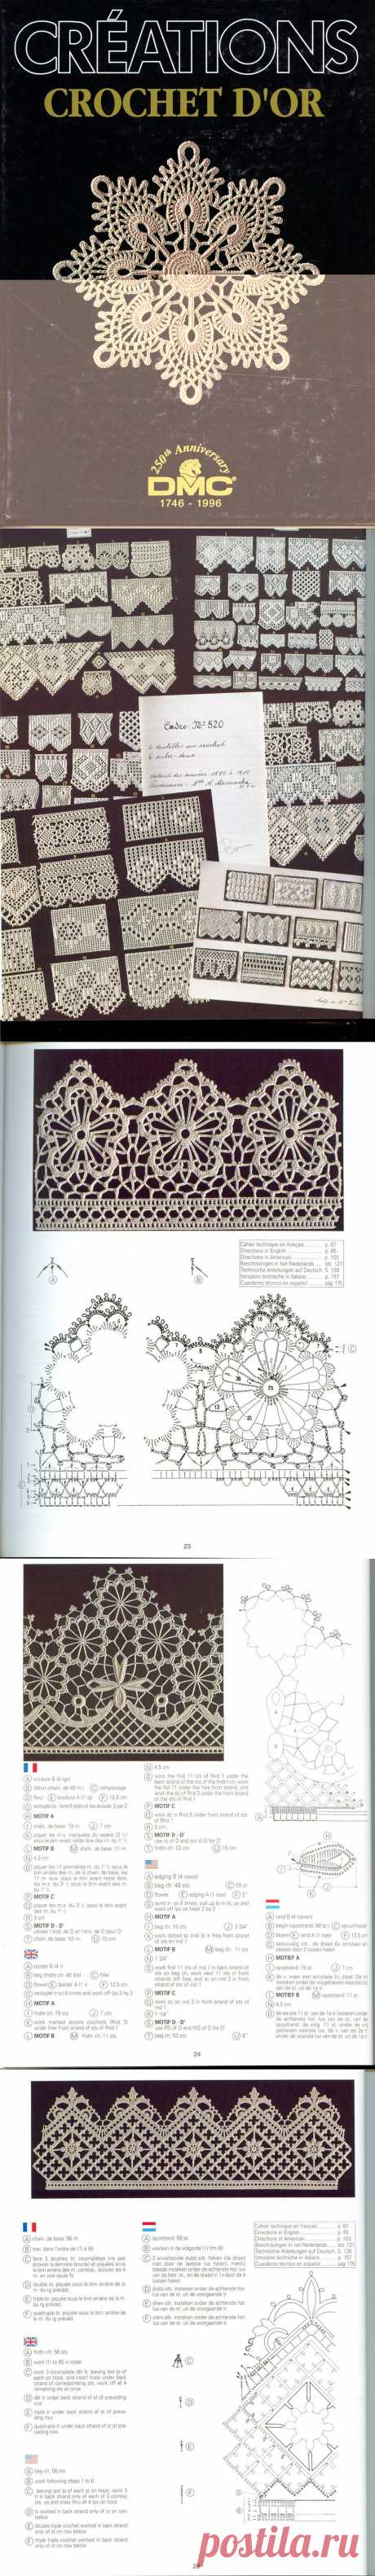 Уникальная книга по вязанию из серии DMC. Creations Crochet D'or (В исходном размере).